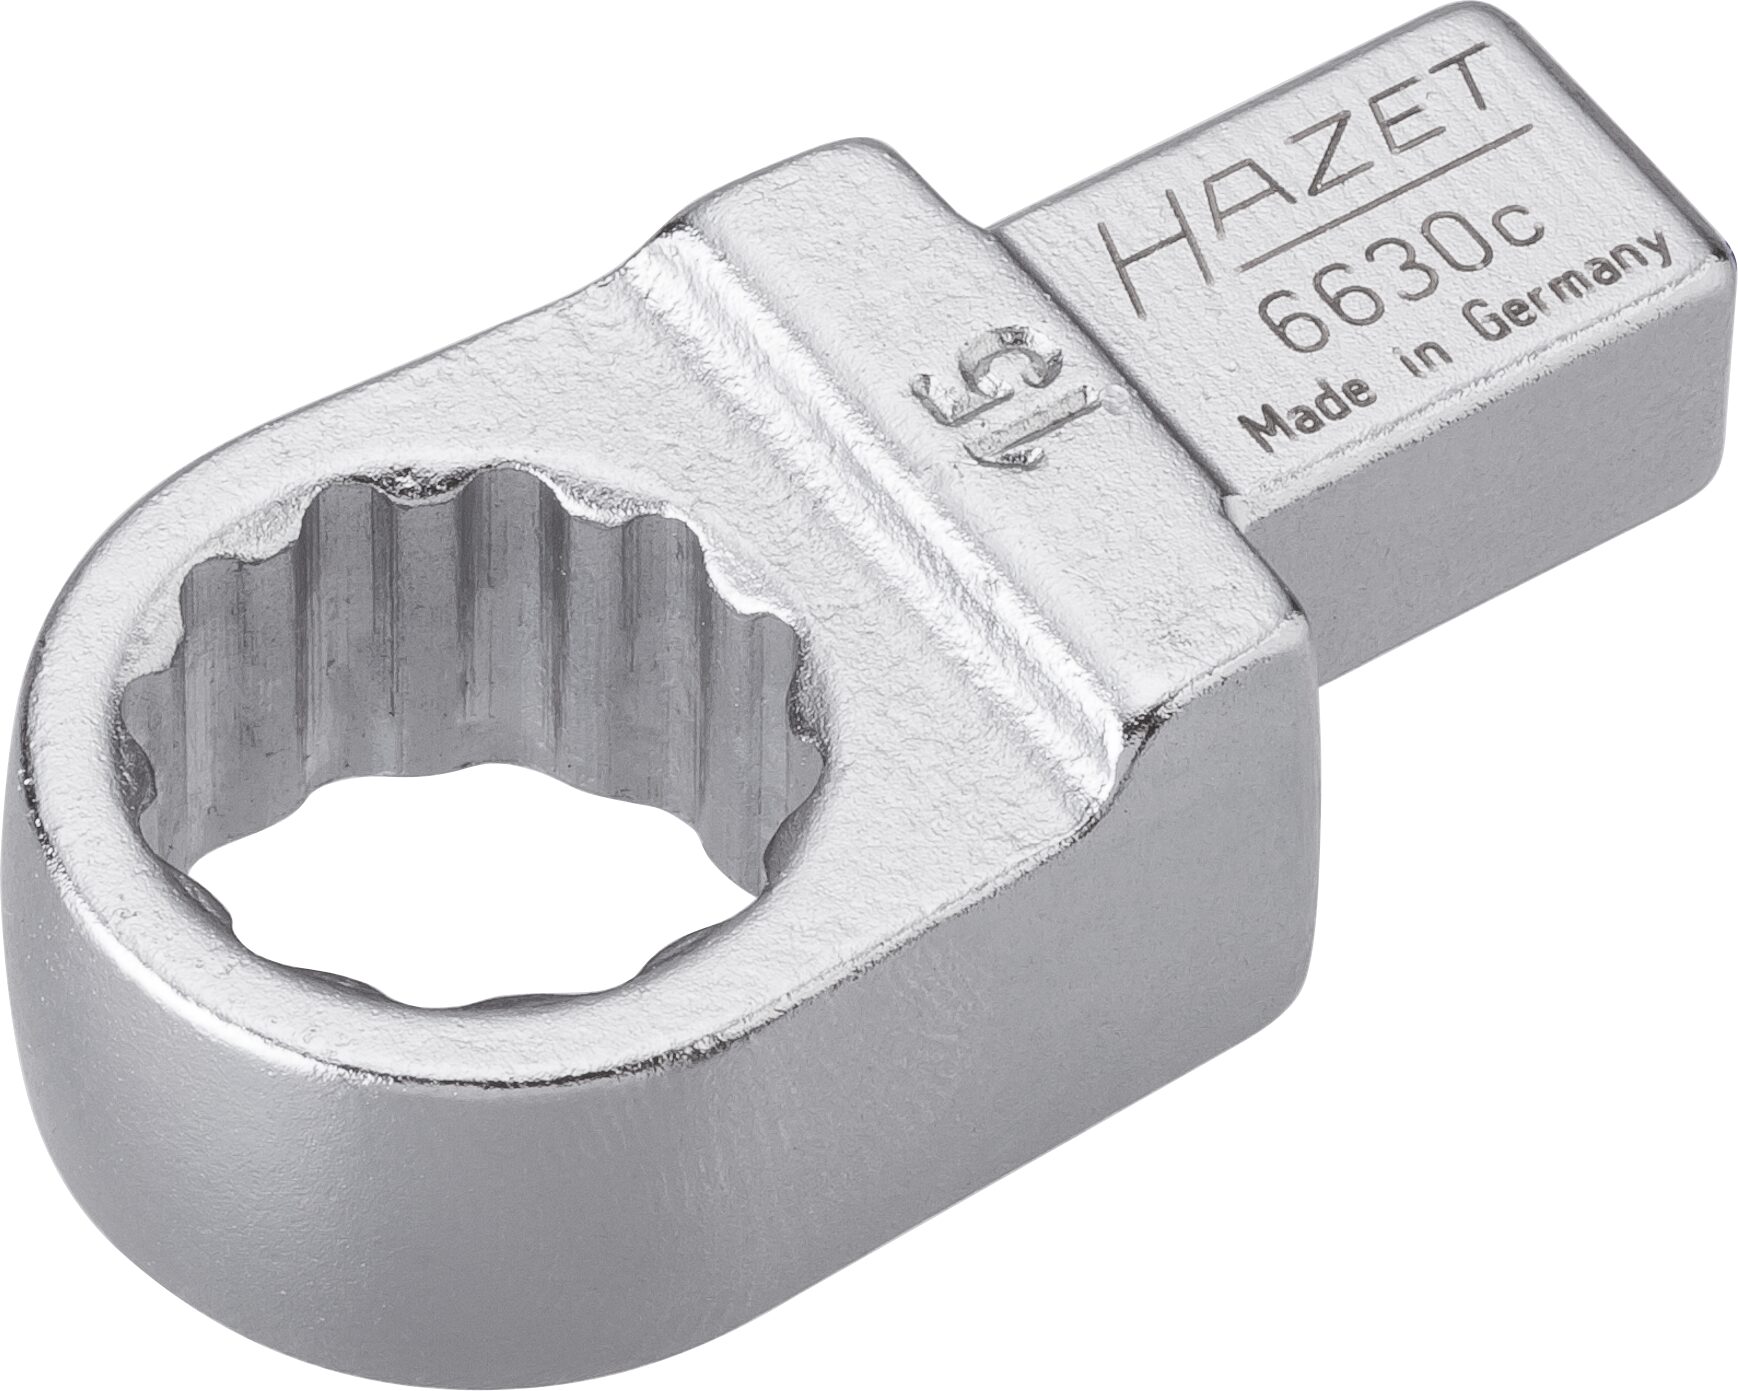 HAZET Einsteck-Ringschlüssel 6630C-15 · Einsteck-Vierkant 9 x 12 mm · Außen Doppel-Sechskant-Tractionsprofil · 15 mm